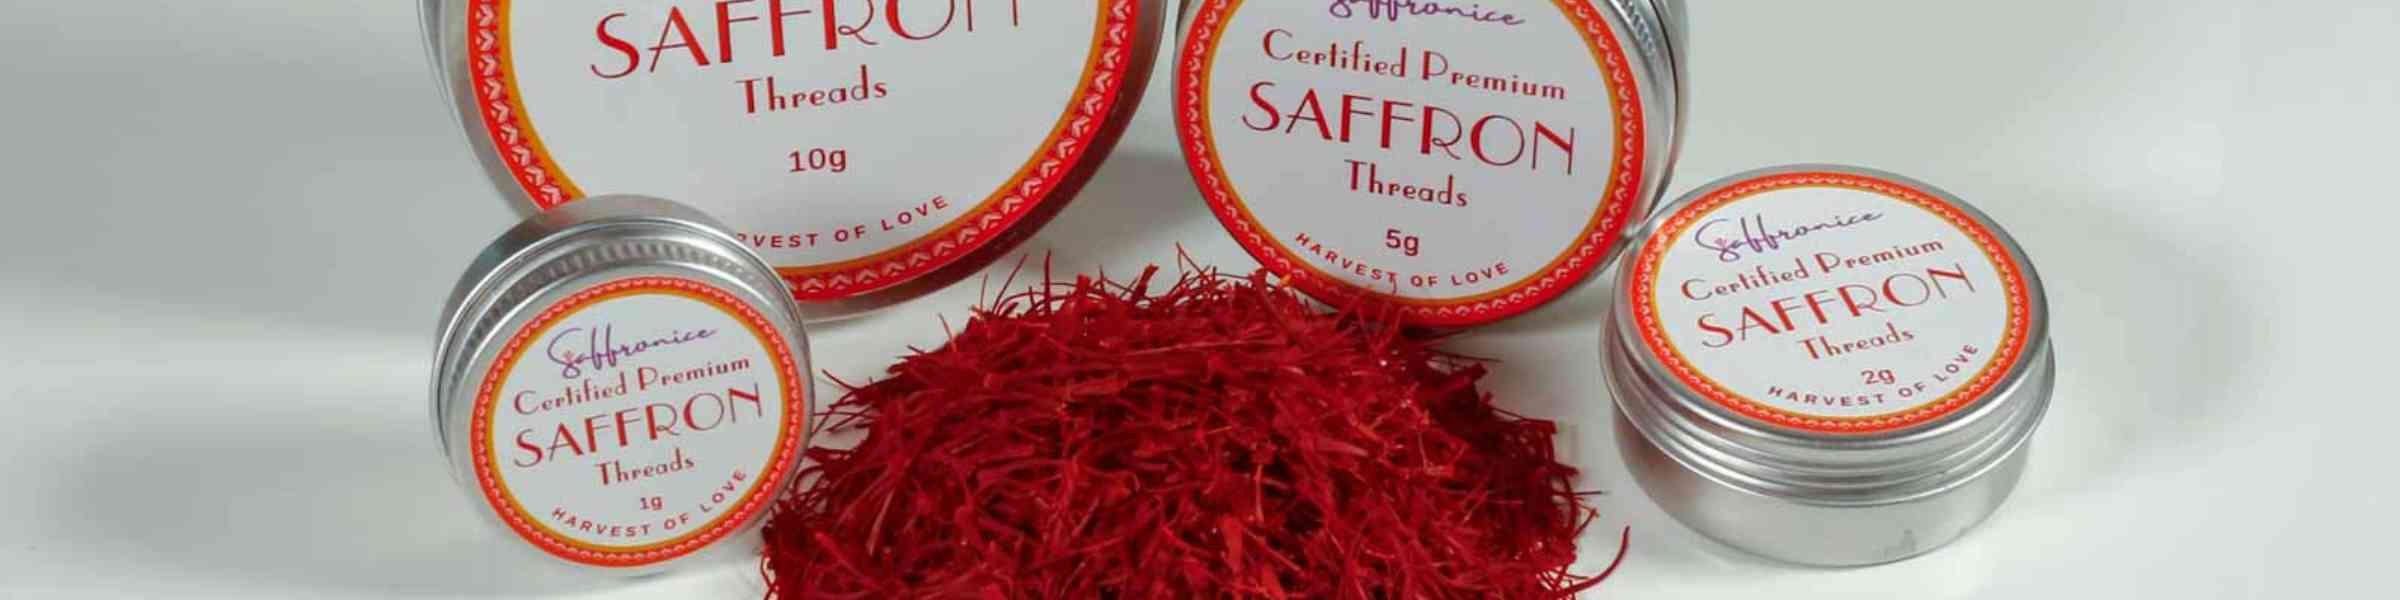 storing saffron